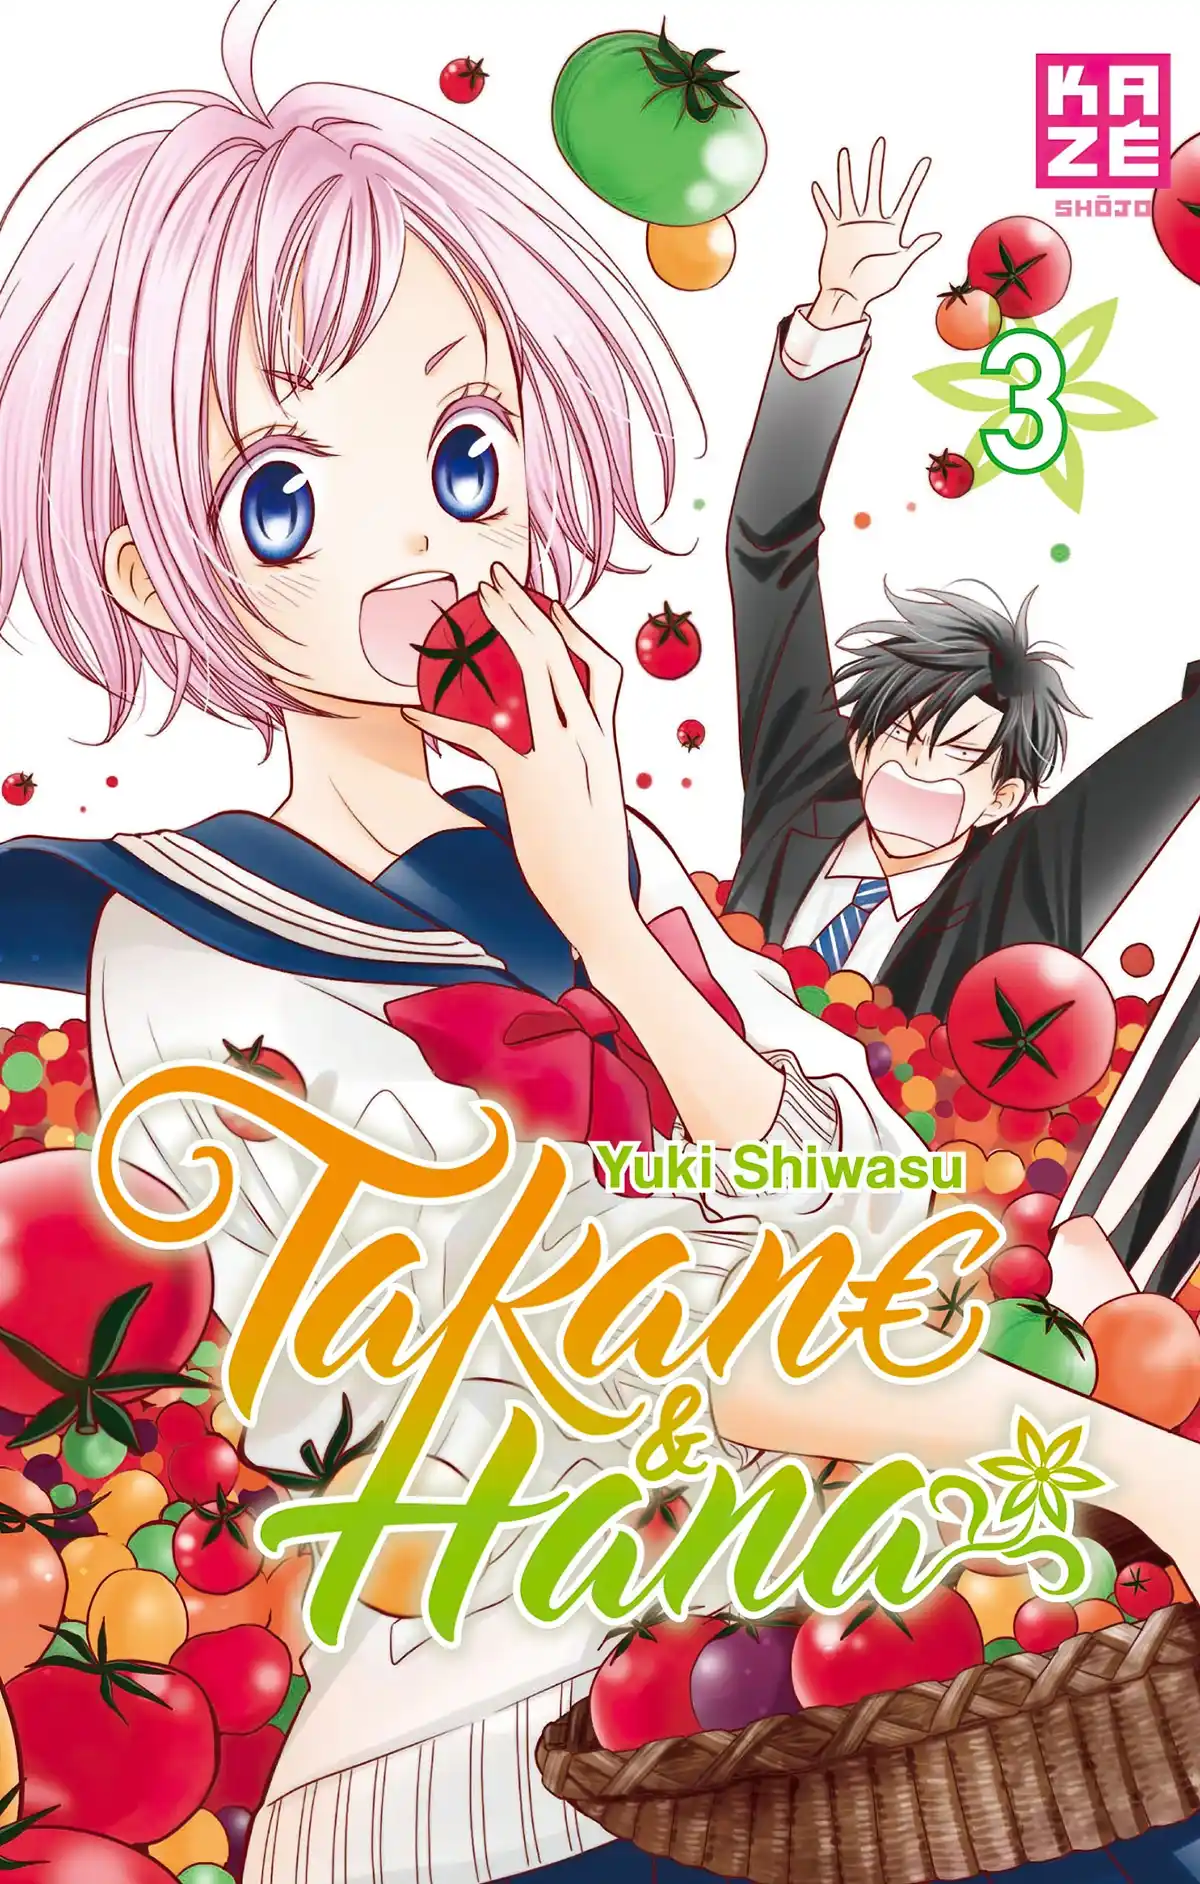 Takane & Hana Volume 3 page 1